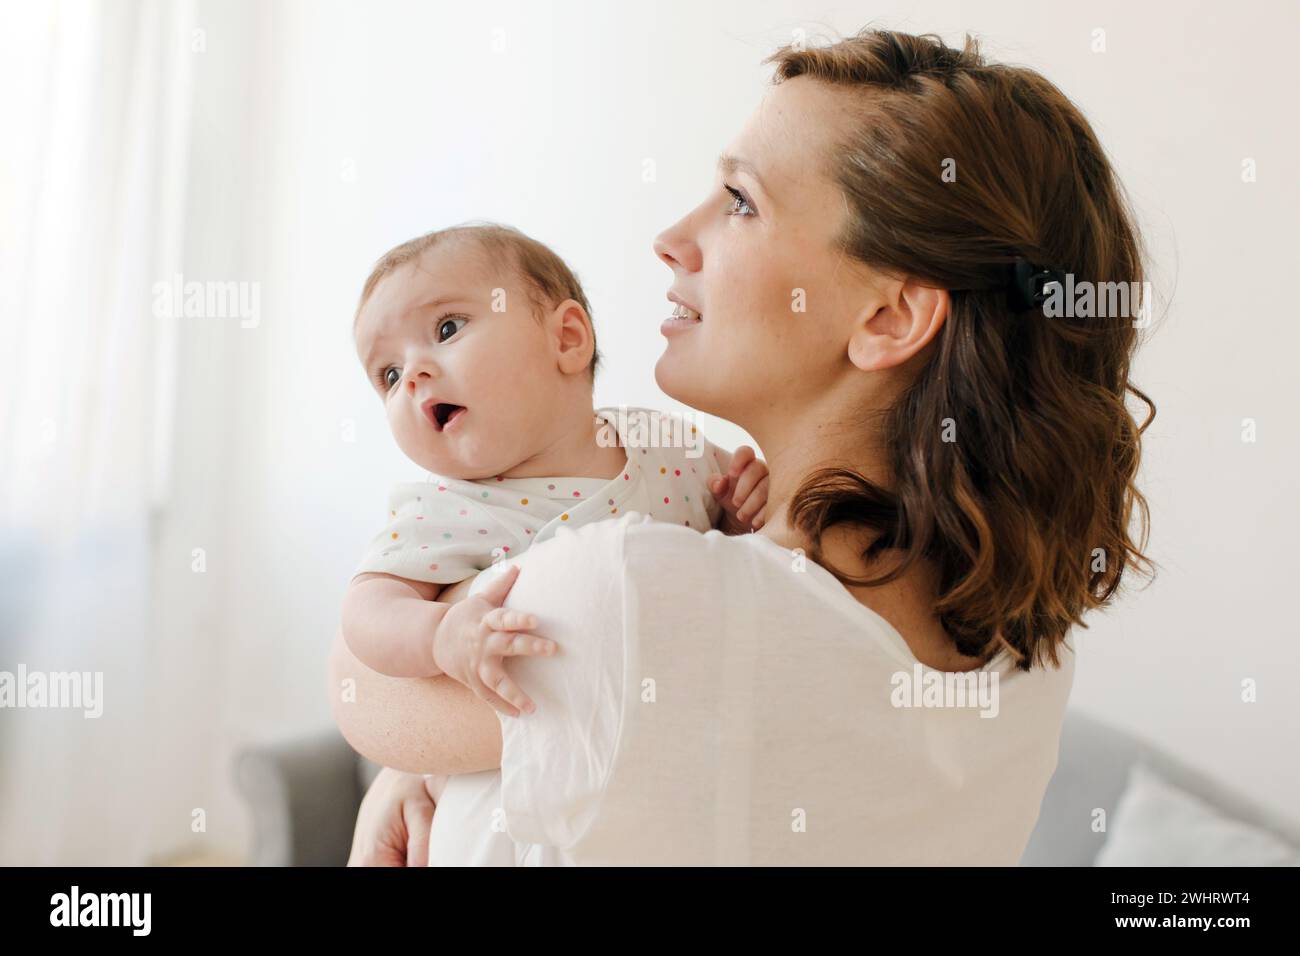 Seitenansicht einer fröhlichen jungen brünetten Frau in lässiger Kleidung, die ein wertvolles Kleinkind im sonnendurchfluteten Wohnzimmer umschließt und nach oben blickt Stockfoto